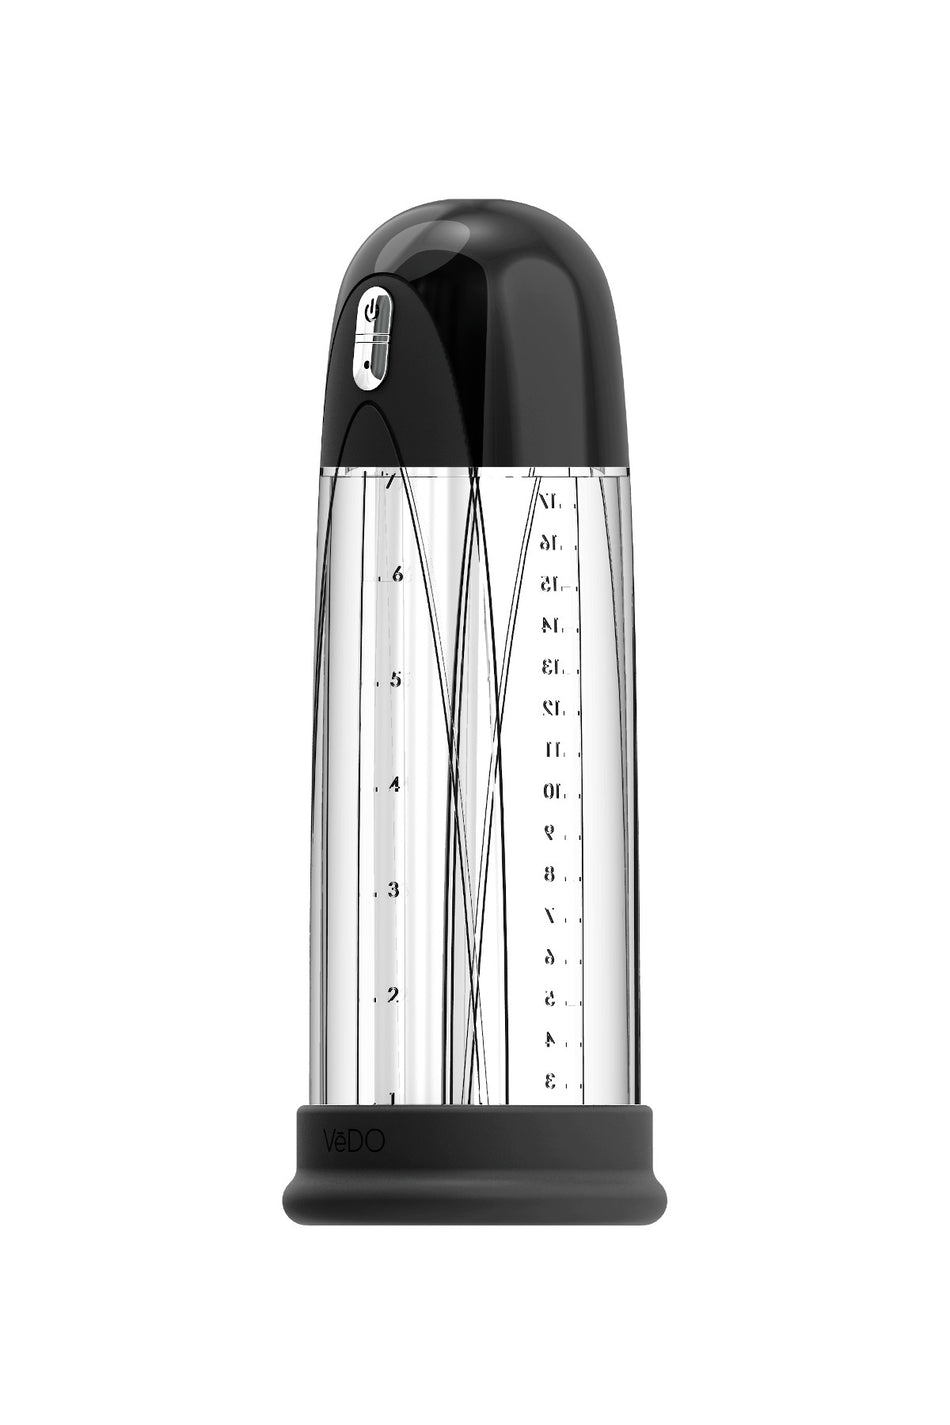 Pump Rechargeable Vacuum Penis Pump Black - Zateo Joy